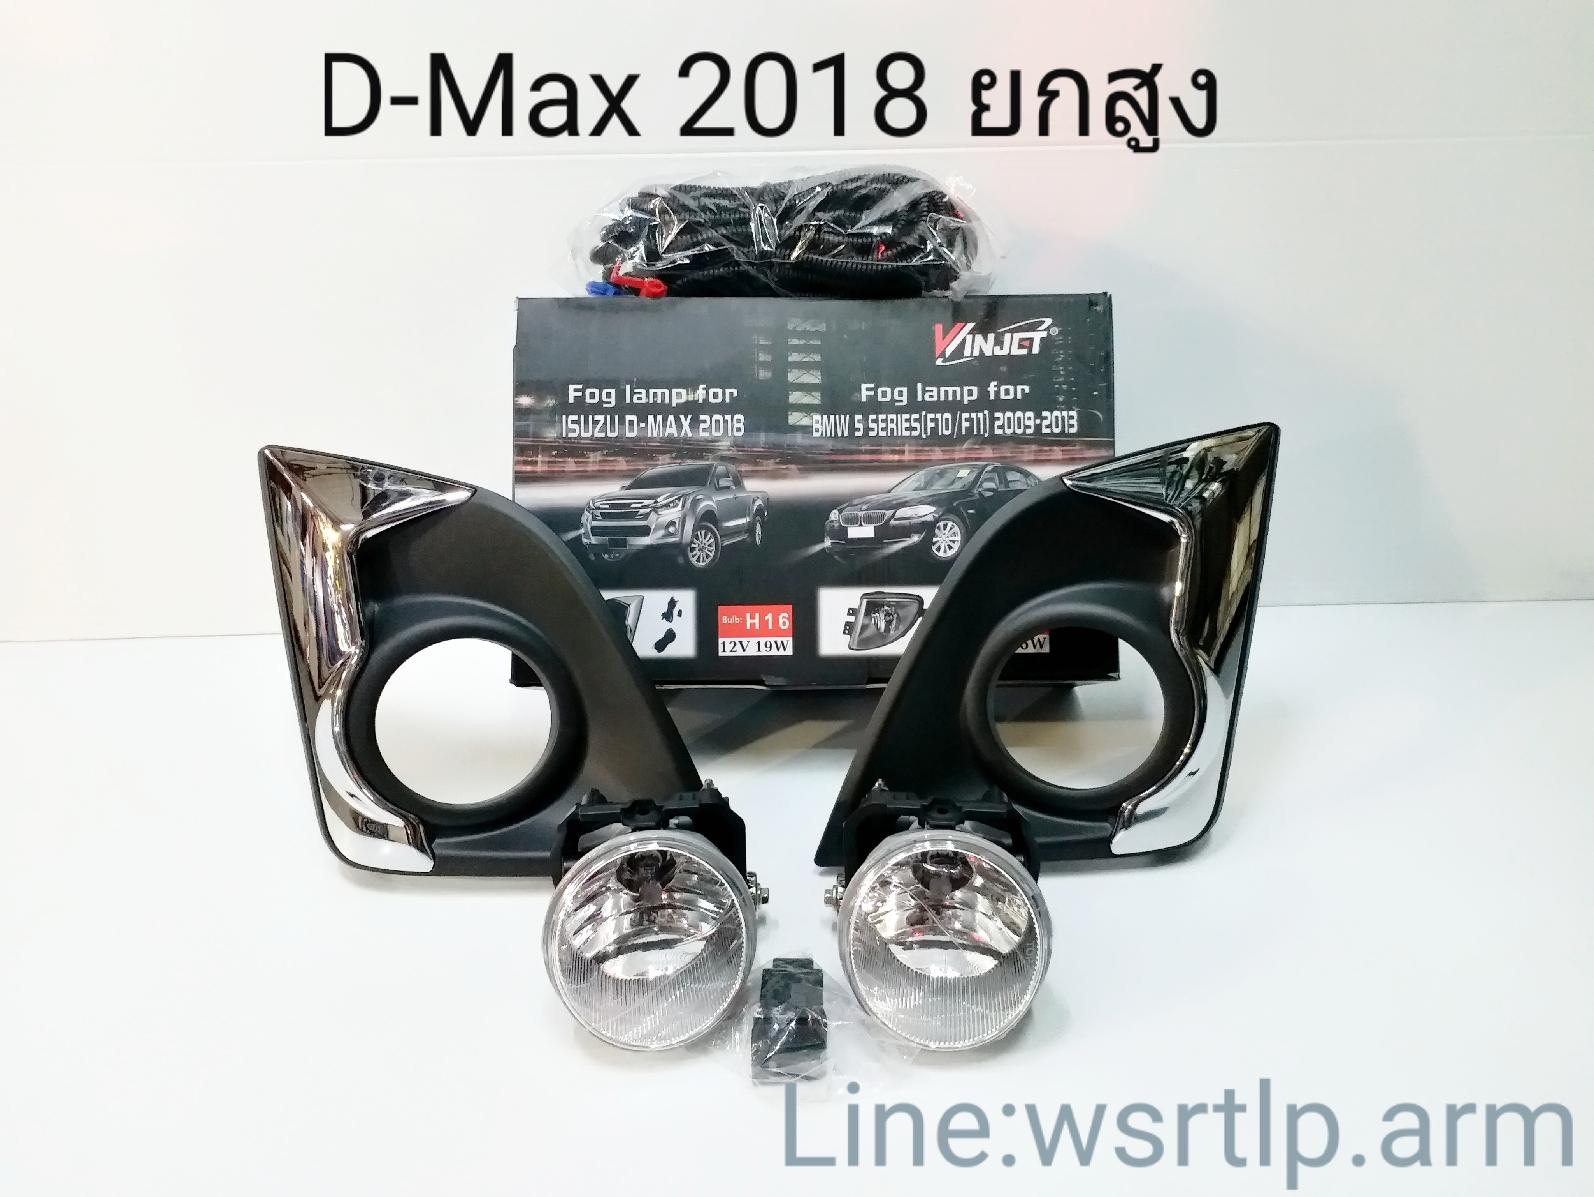 ไฟตัดหมอก D-Max ดีแม็ก 2018 ตัวยกสูง D-Max 18 Hilander ไฮแลนเดอร์ สปอทไลท์ Spotlight